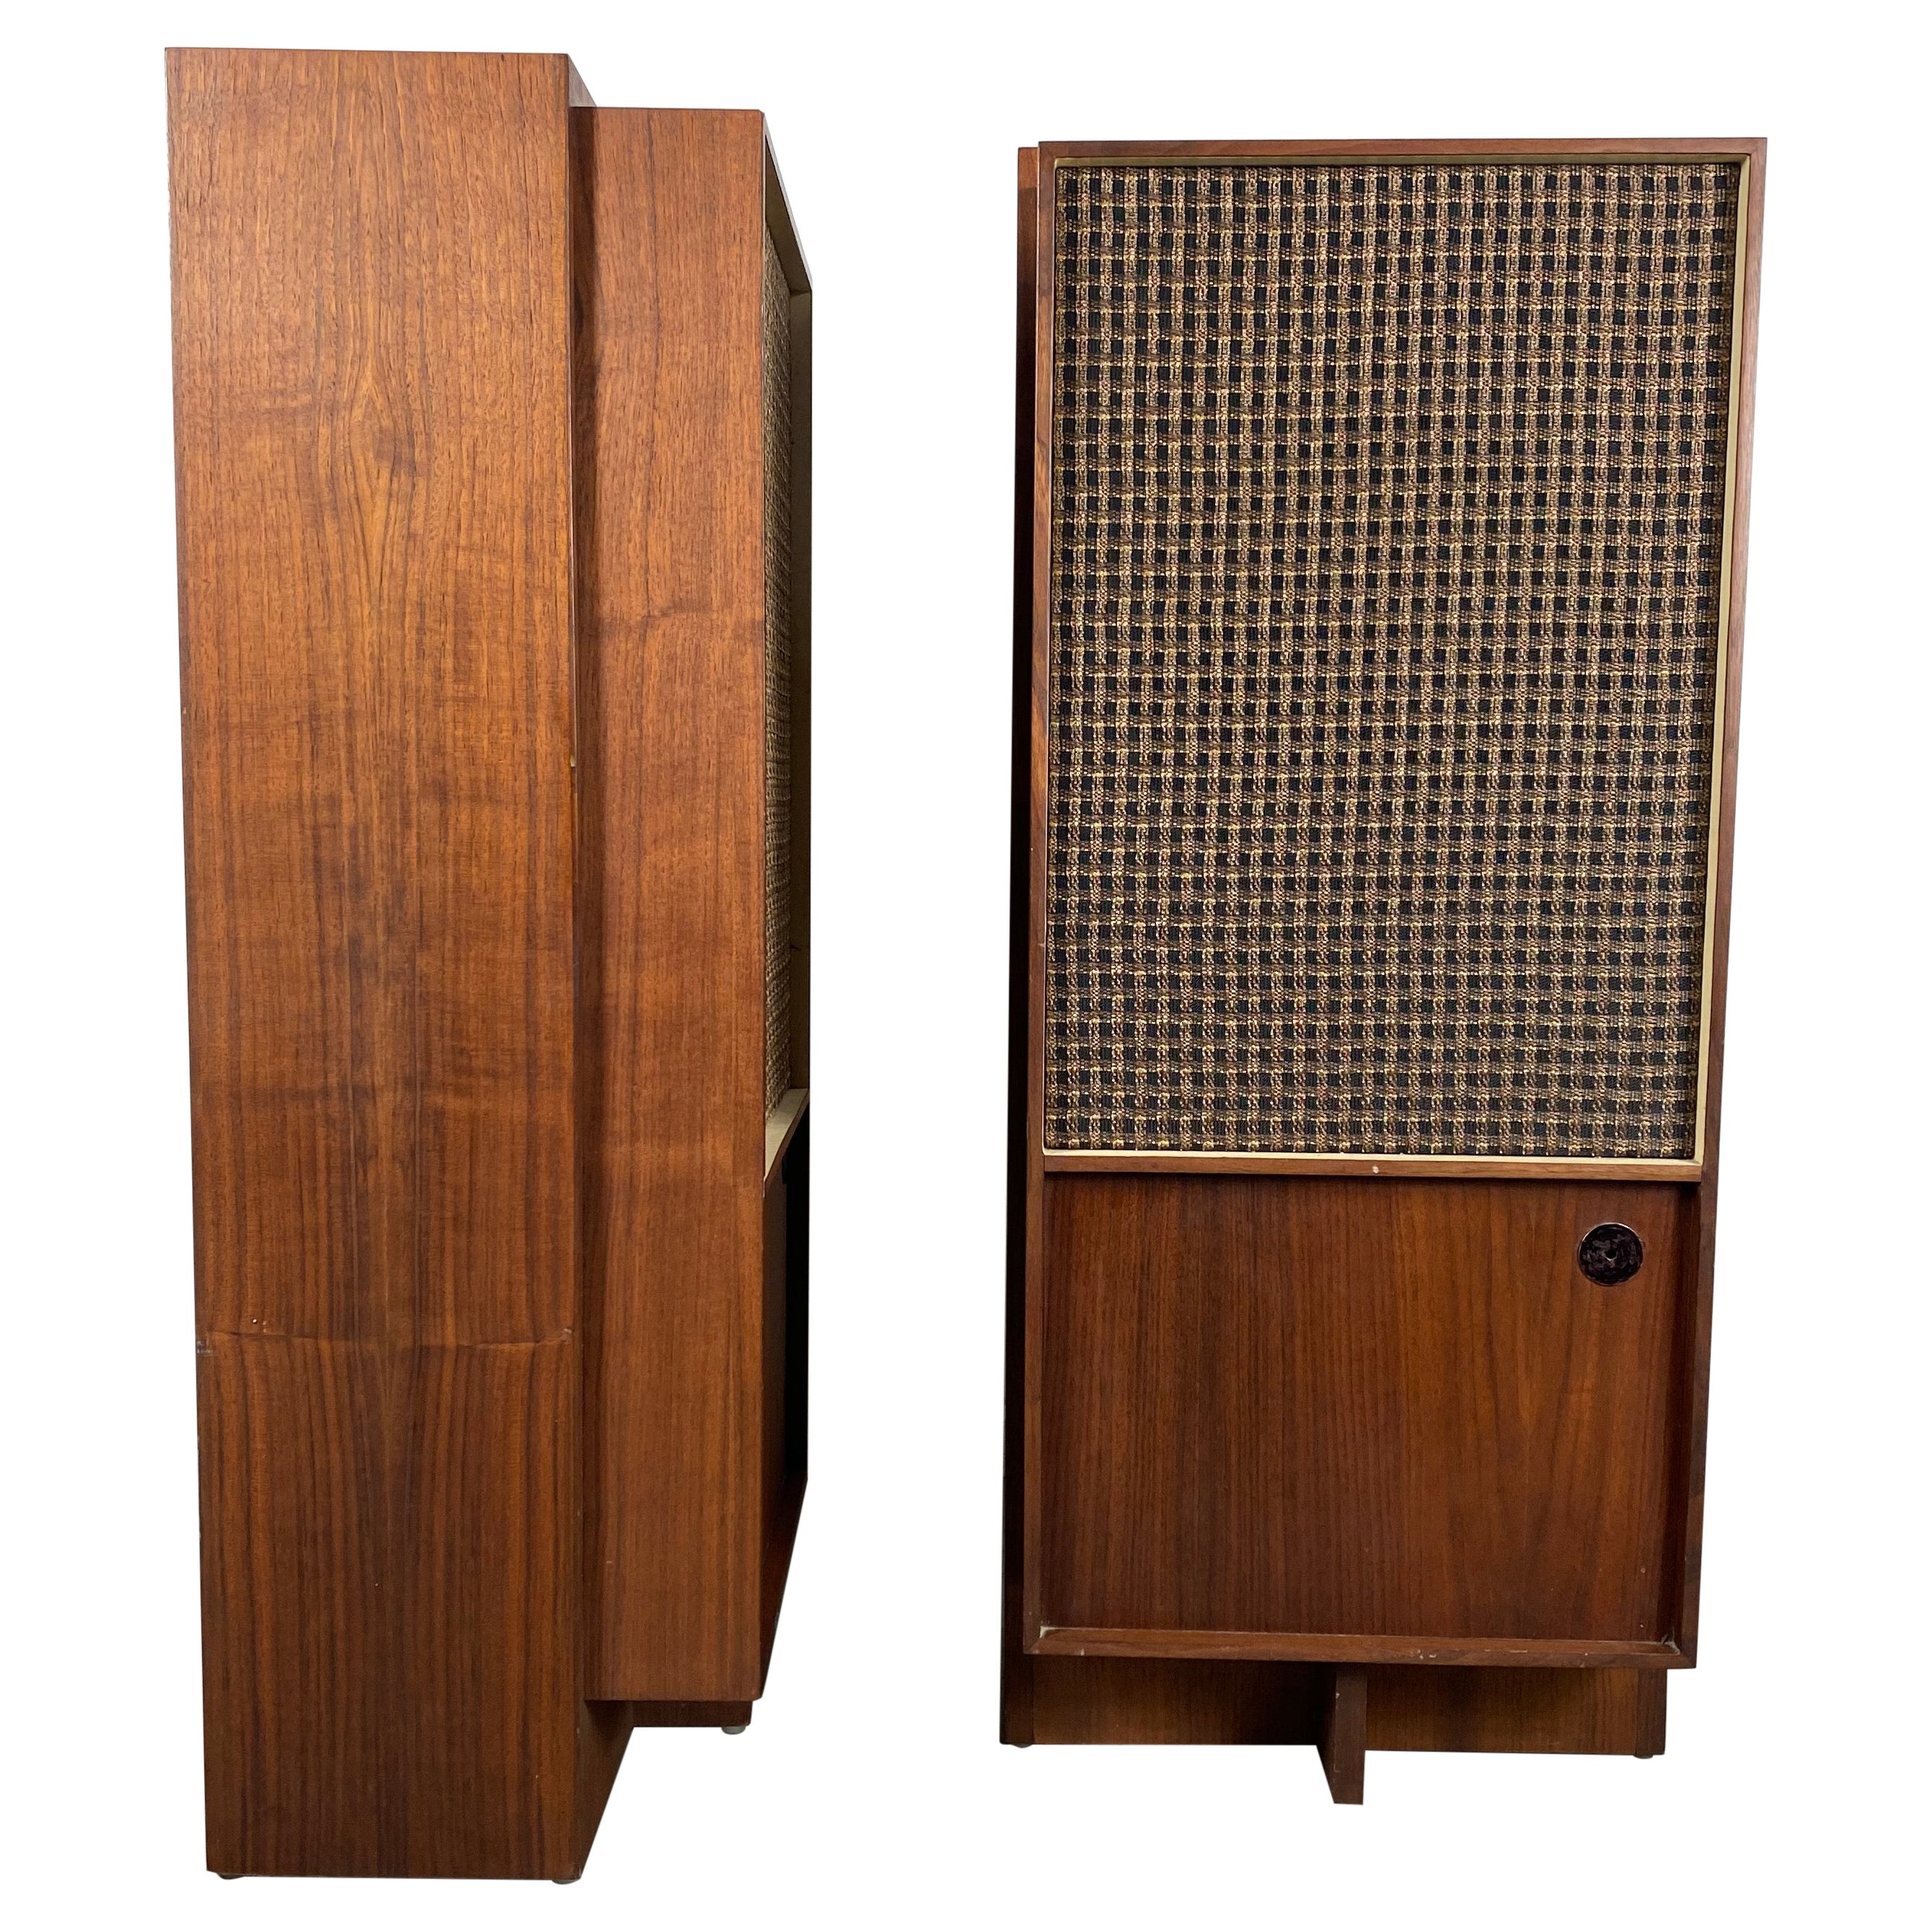 Paire d'enceintes audio modernistes en noyer par Bozak, design de Frank Lloyd Wright